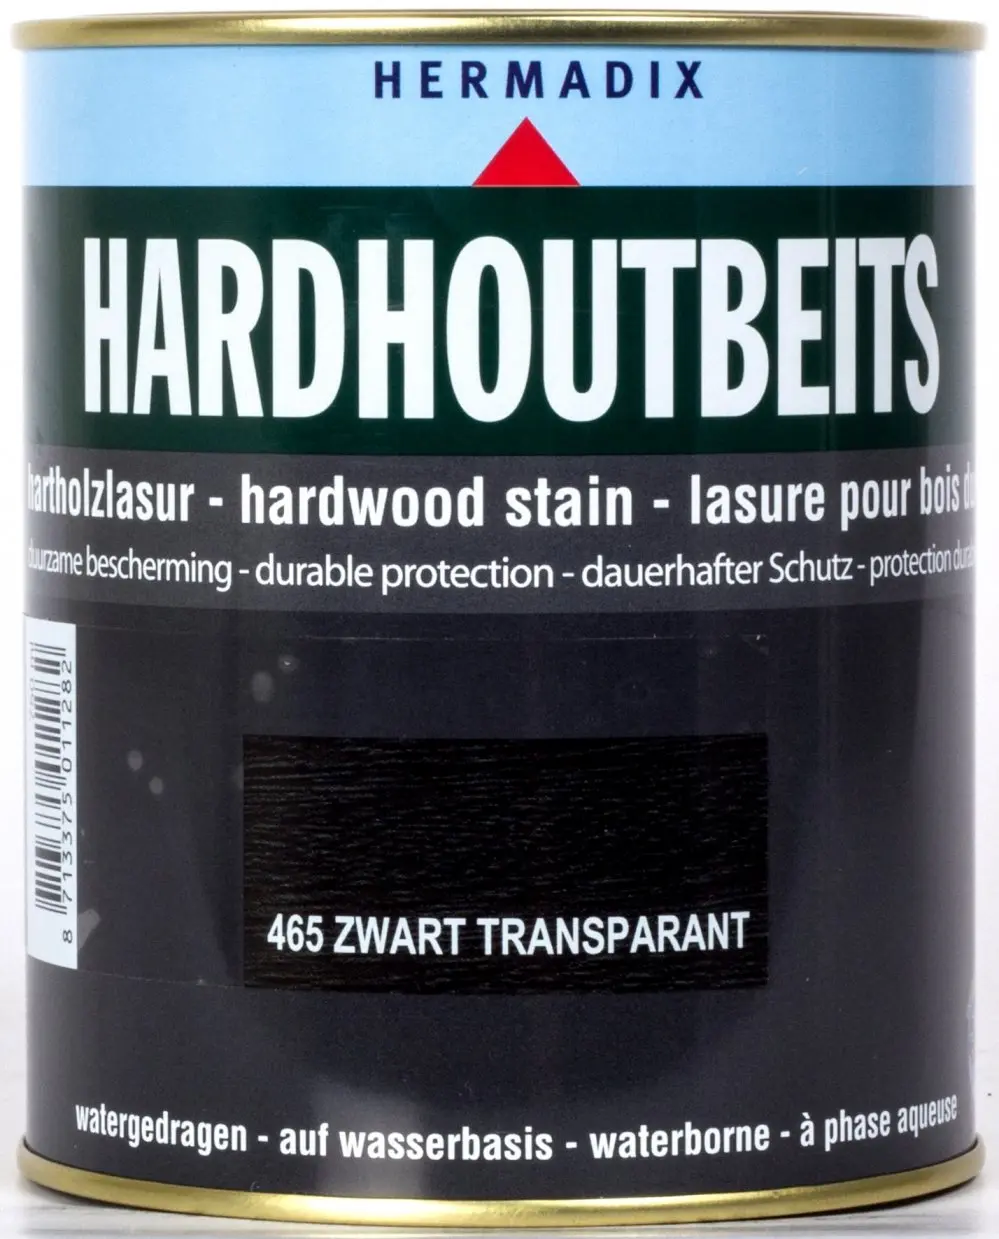 Tuinbeits - hermadix-hardhoutbeits-465-zwart-transparant-0,75l-verfcompleet